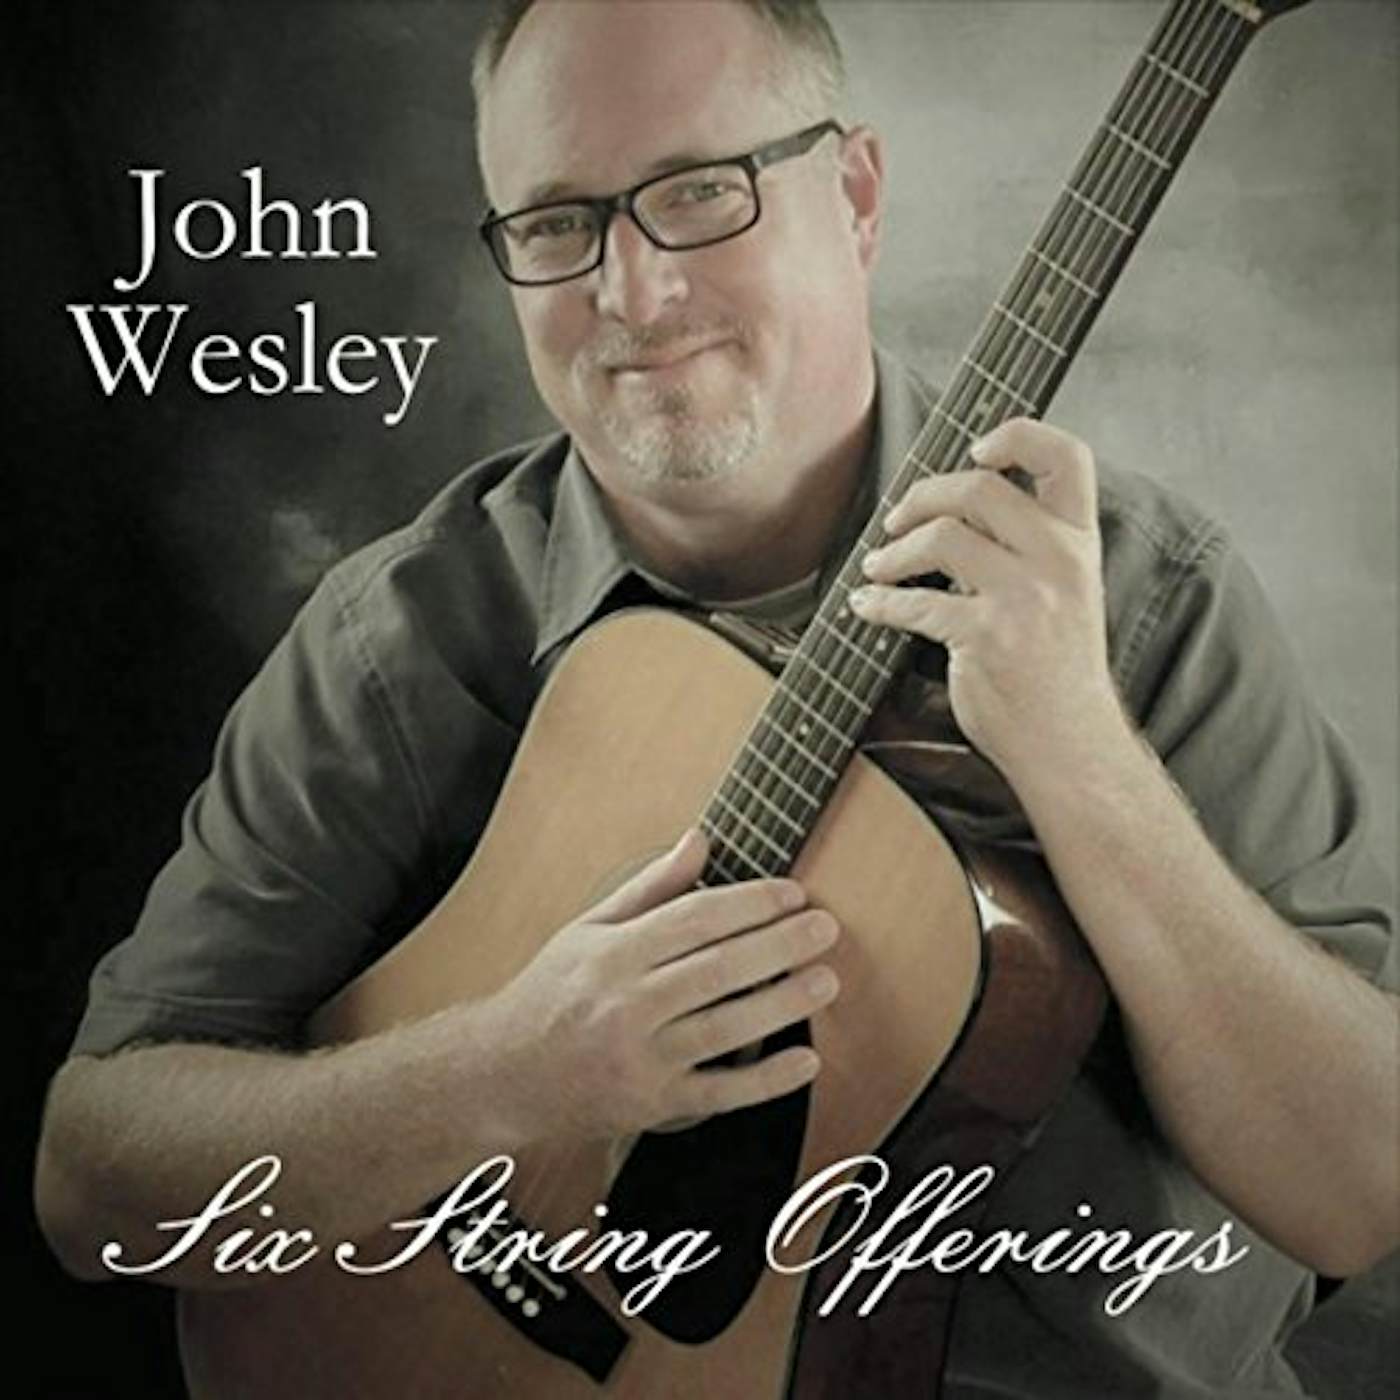 John Wesley SIX STRING OFFERINGS CD